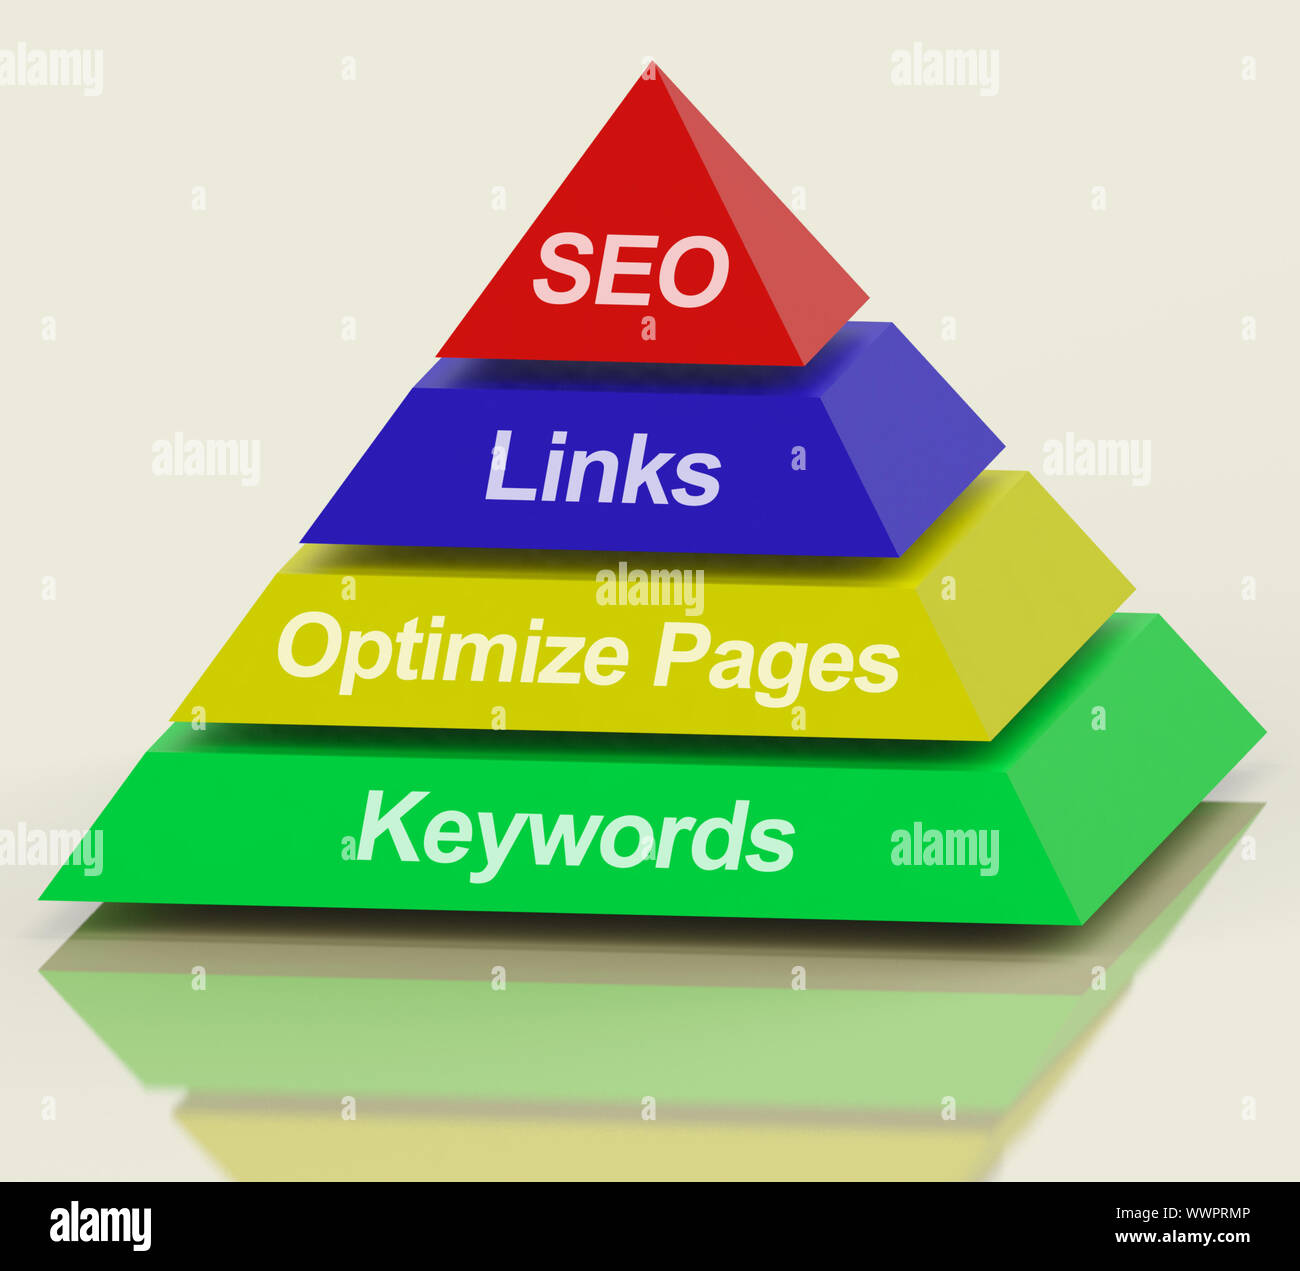 Pirámide de SEO que muestra el uso de palabras clave y optimización de  enlaces Fotografía de stock - Alamy